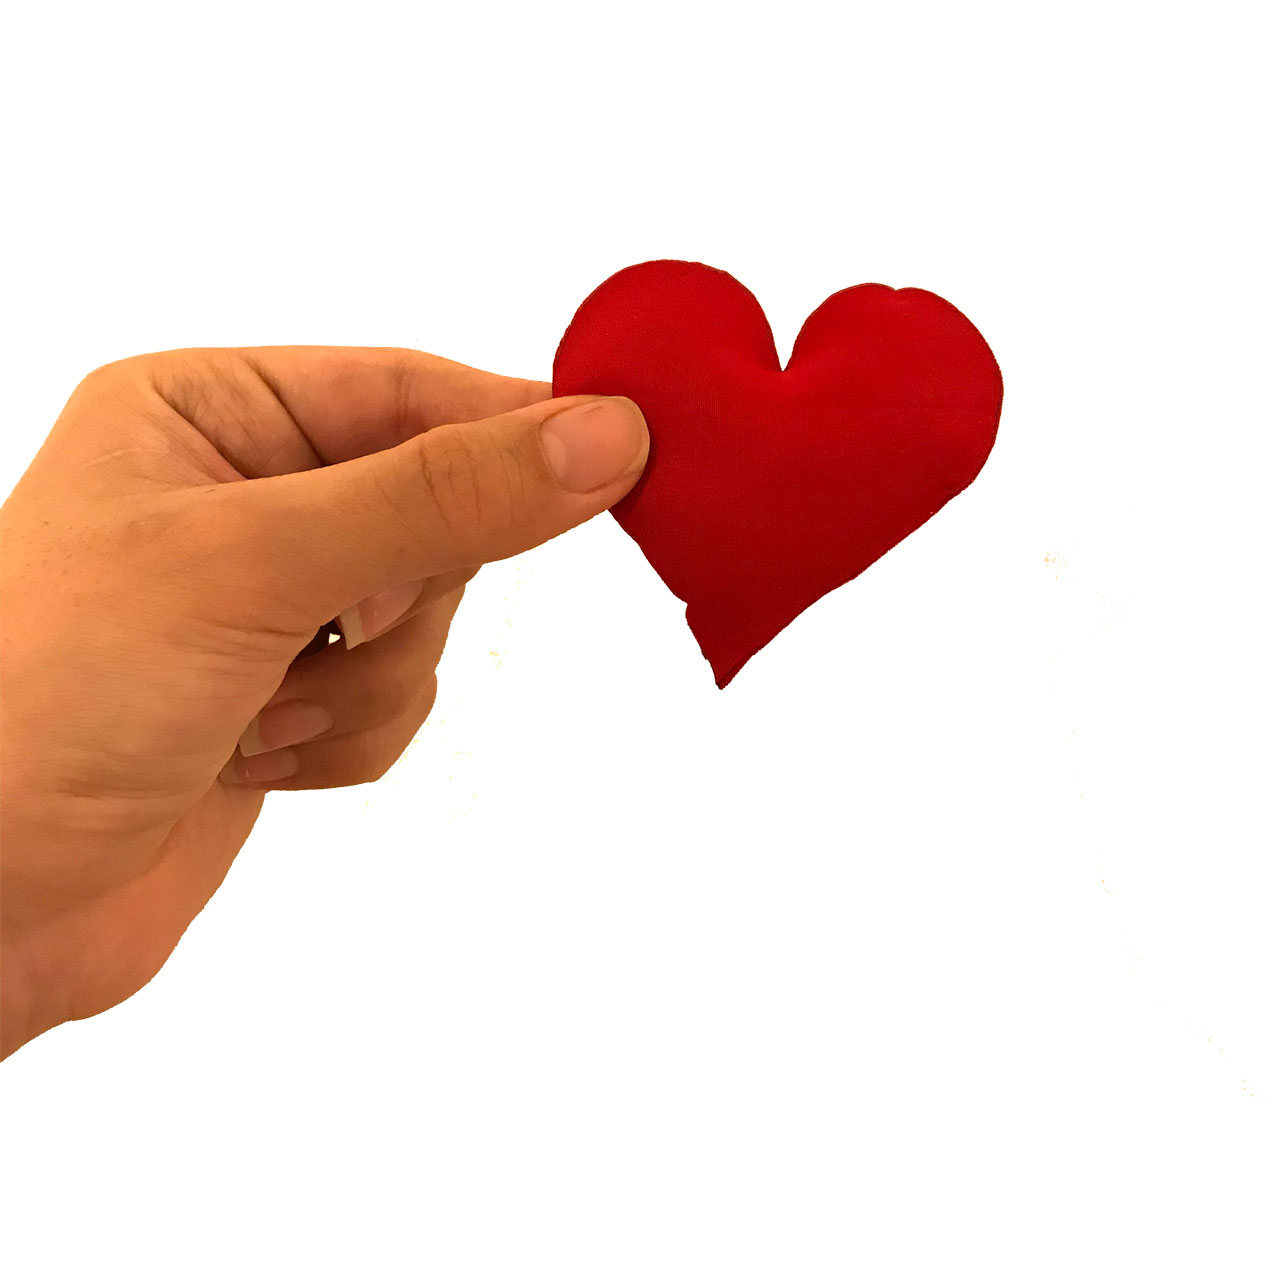 ابزار تزیینی کادو طرح قلب مدل 20-H بسته 8 عددی